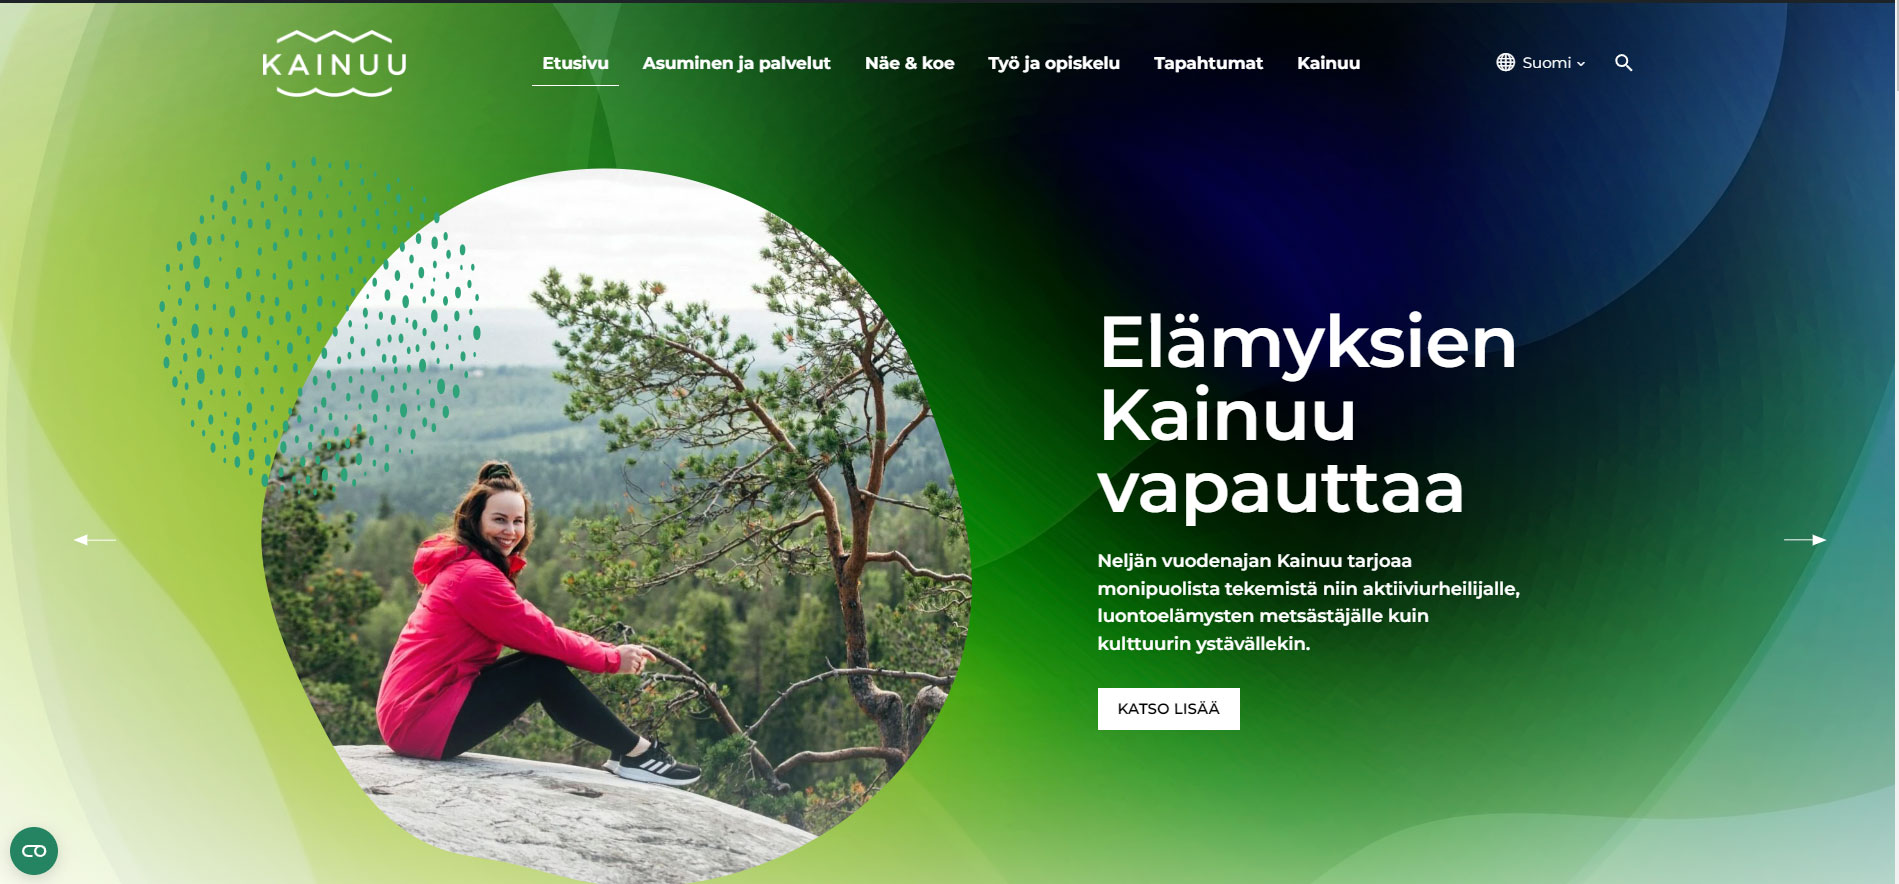 Kainuu.fi etusivun kuva